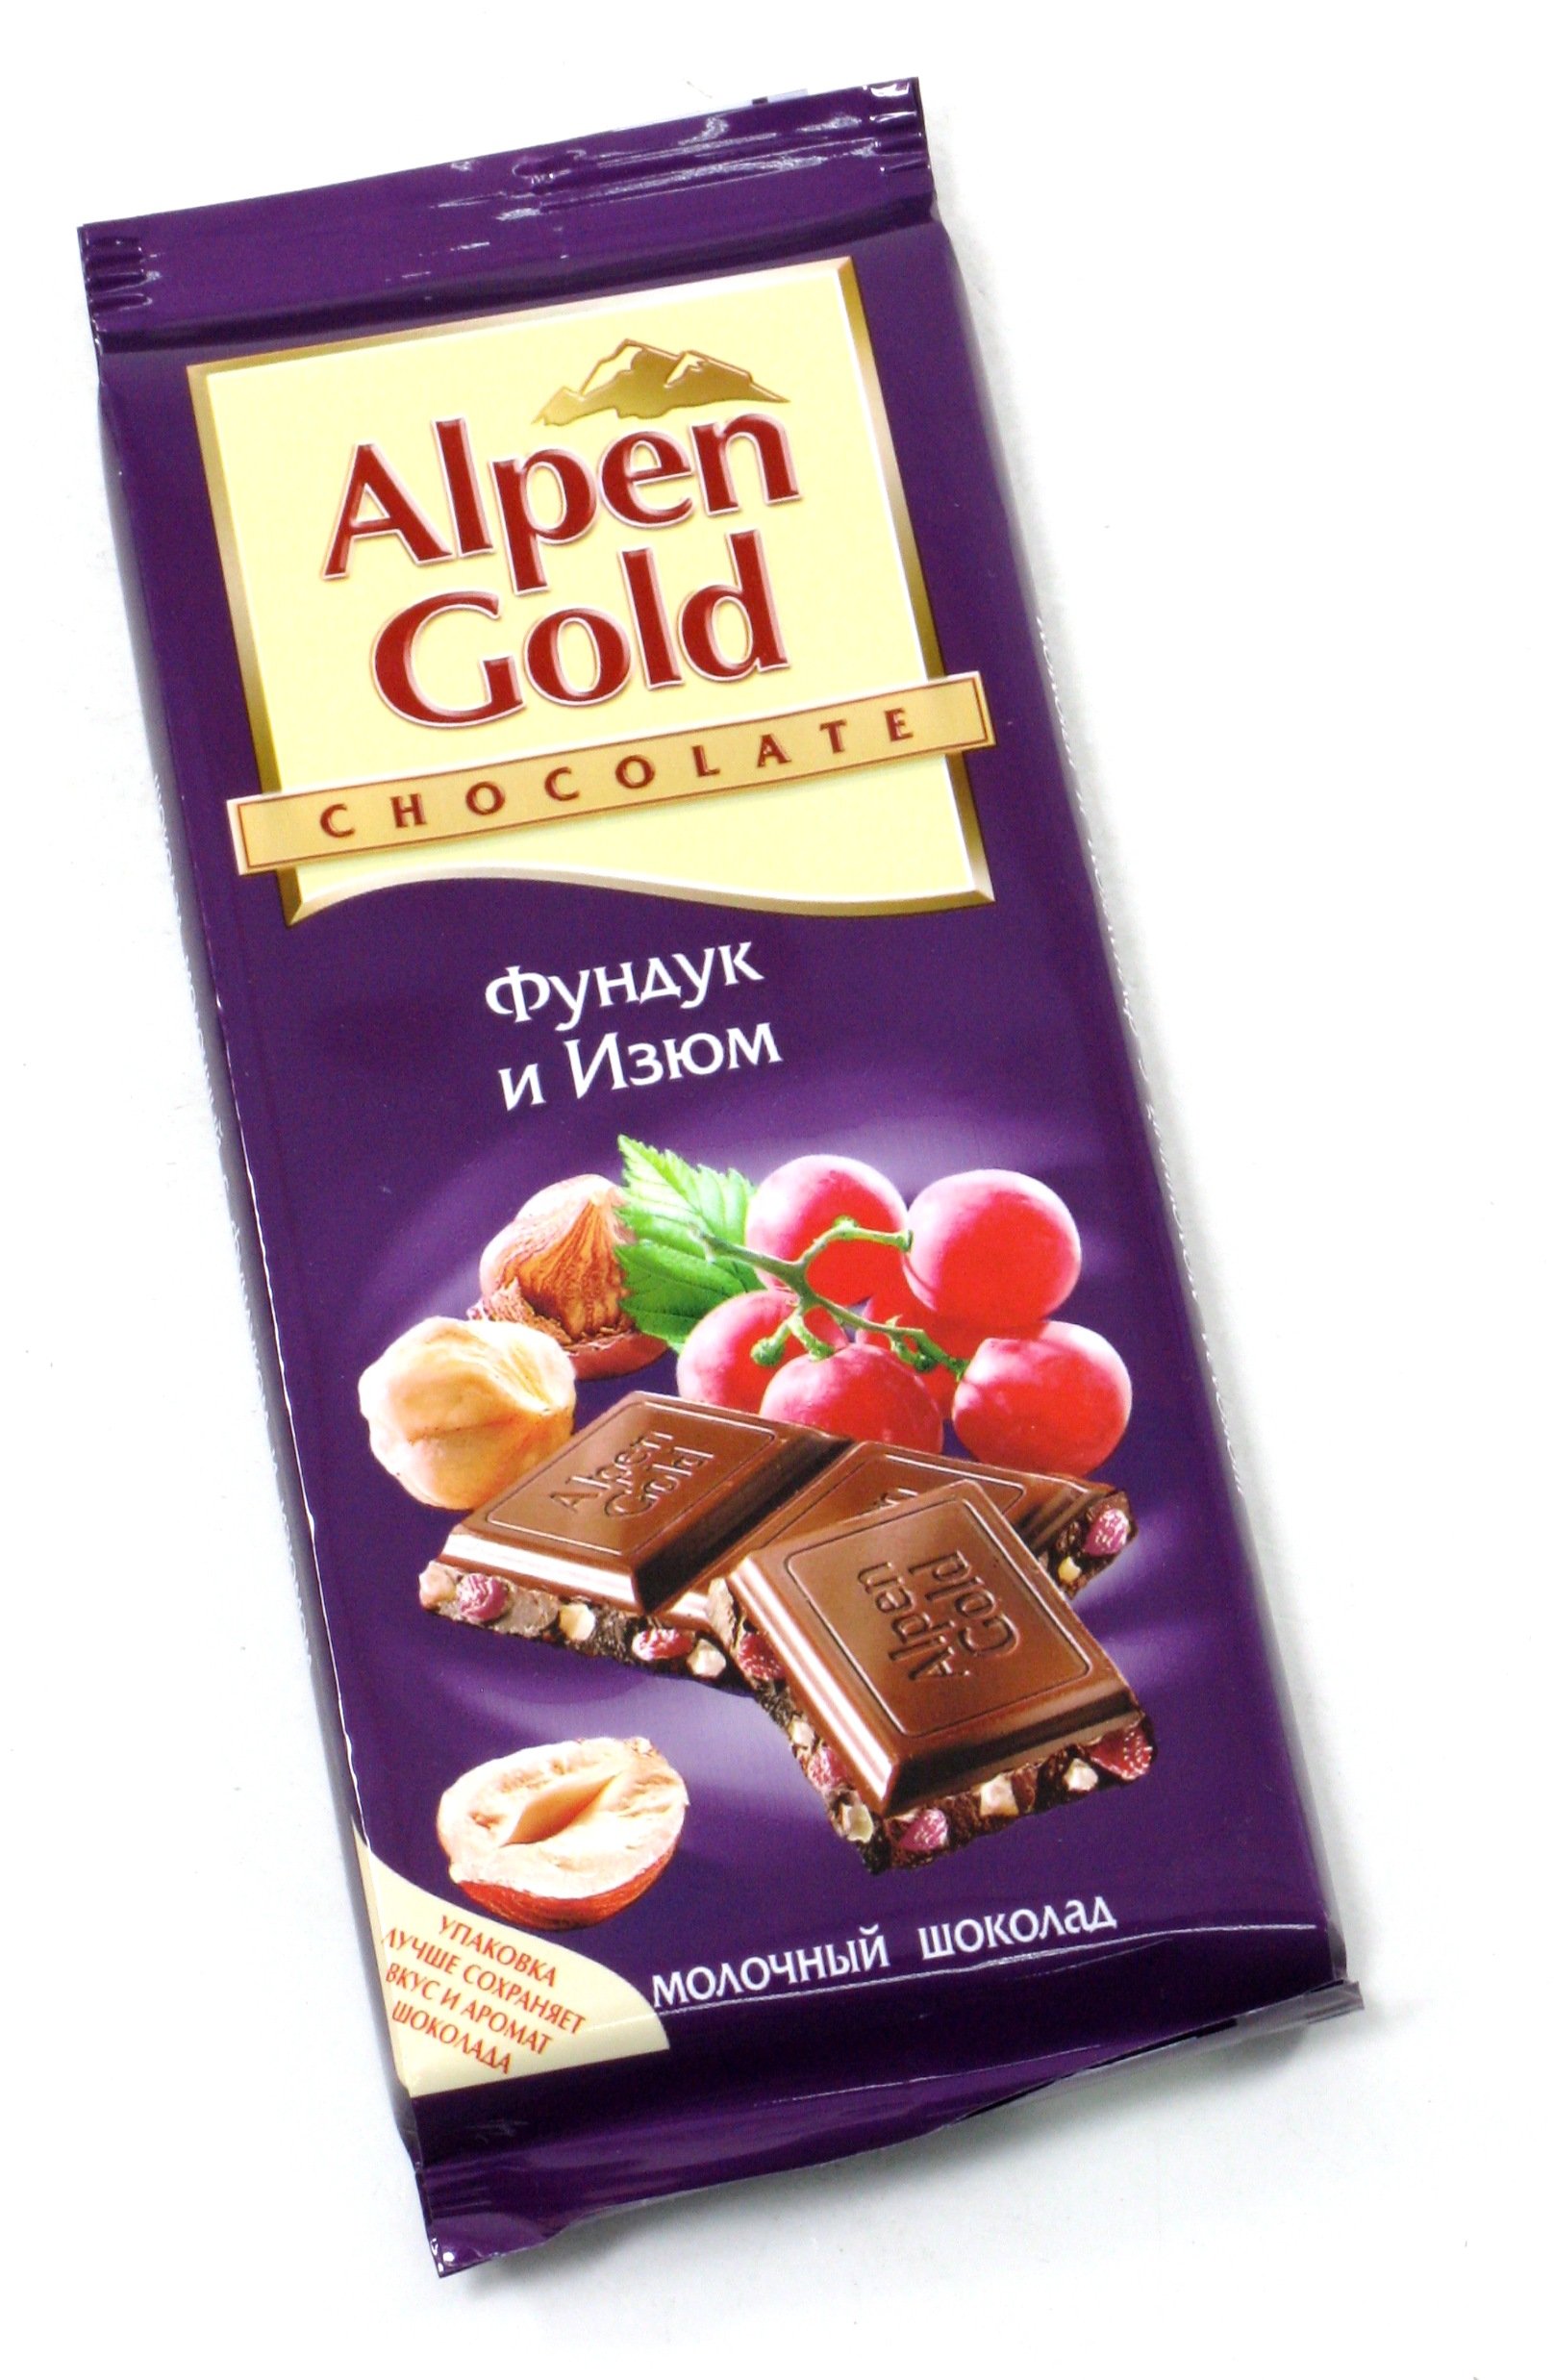 Шоколадка изюм орехи. Шоколад Альпен Гольд фундук/Изюм 90г. Шоколад "Альпен Голд" молочный с фундуком и изюмом 85г. Шоколад Альпен Голд 85г фундук/Изюм. Шоколад Альпен Гольд 90гр фундук.